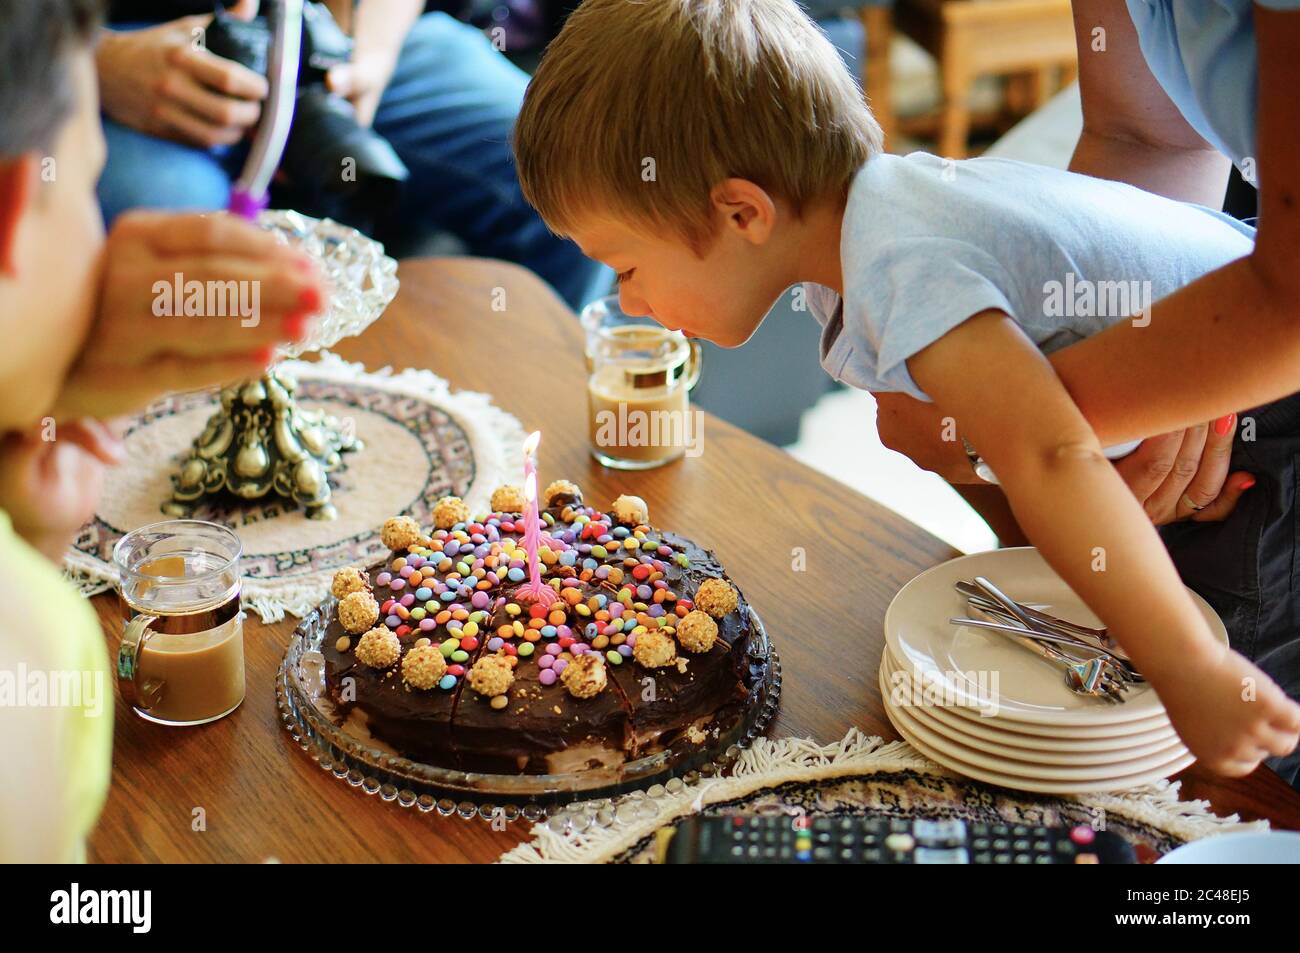 VAALS, PAYS-BAS - 16 août 2019 : un jeune garçon de deux ans soufflait une bougie sur un gâteau d'anniversaire au chocolat dans une maison. Banque D'Images